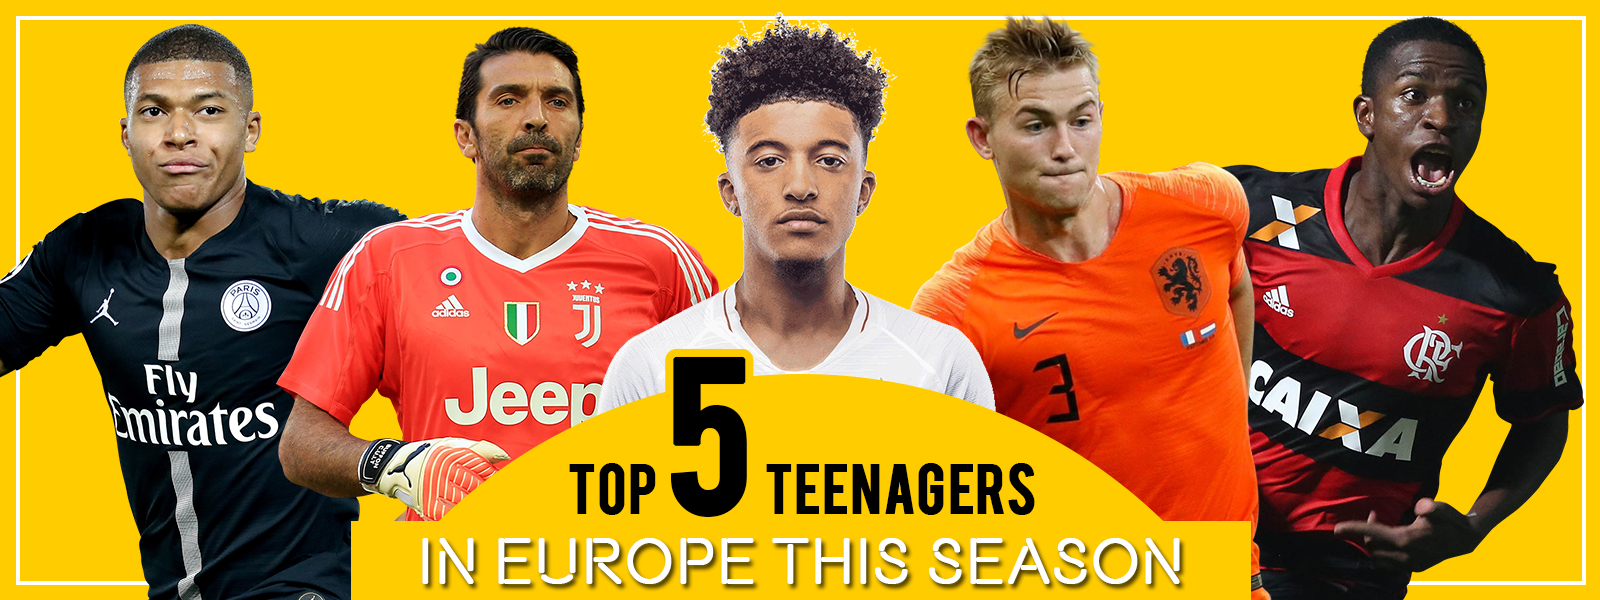 Top Teenage Footballers In Europe This Season